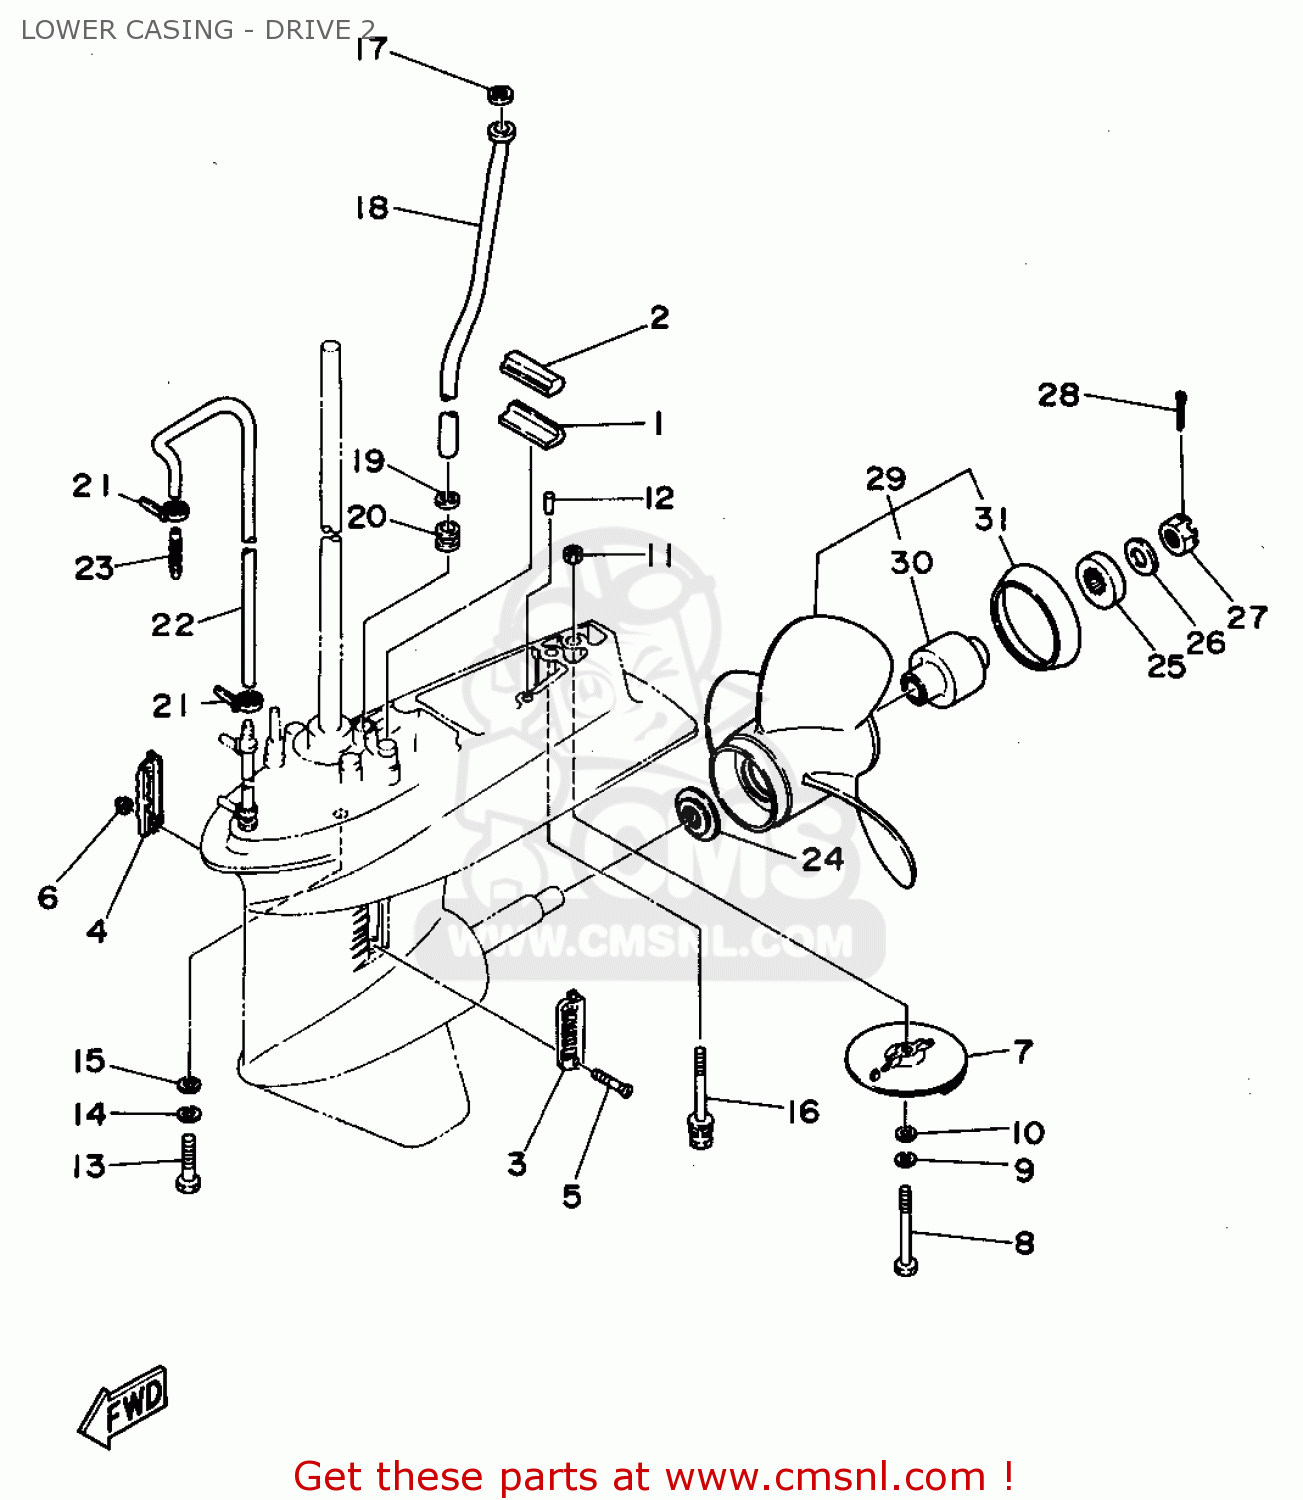 1978 yamaha xs750 wiring diagram